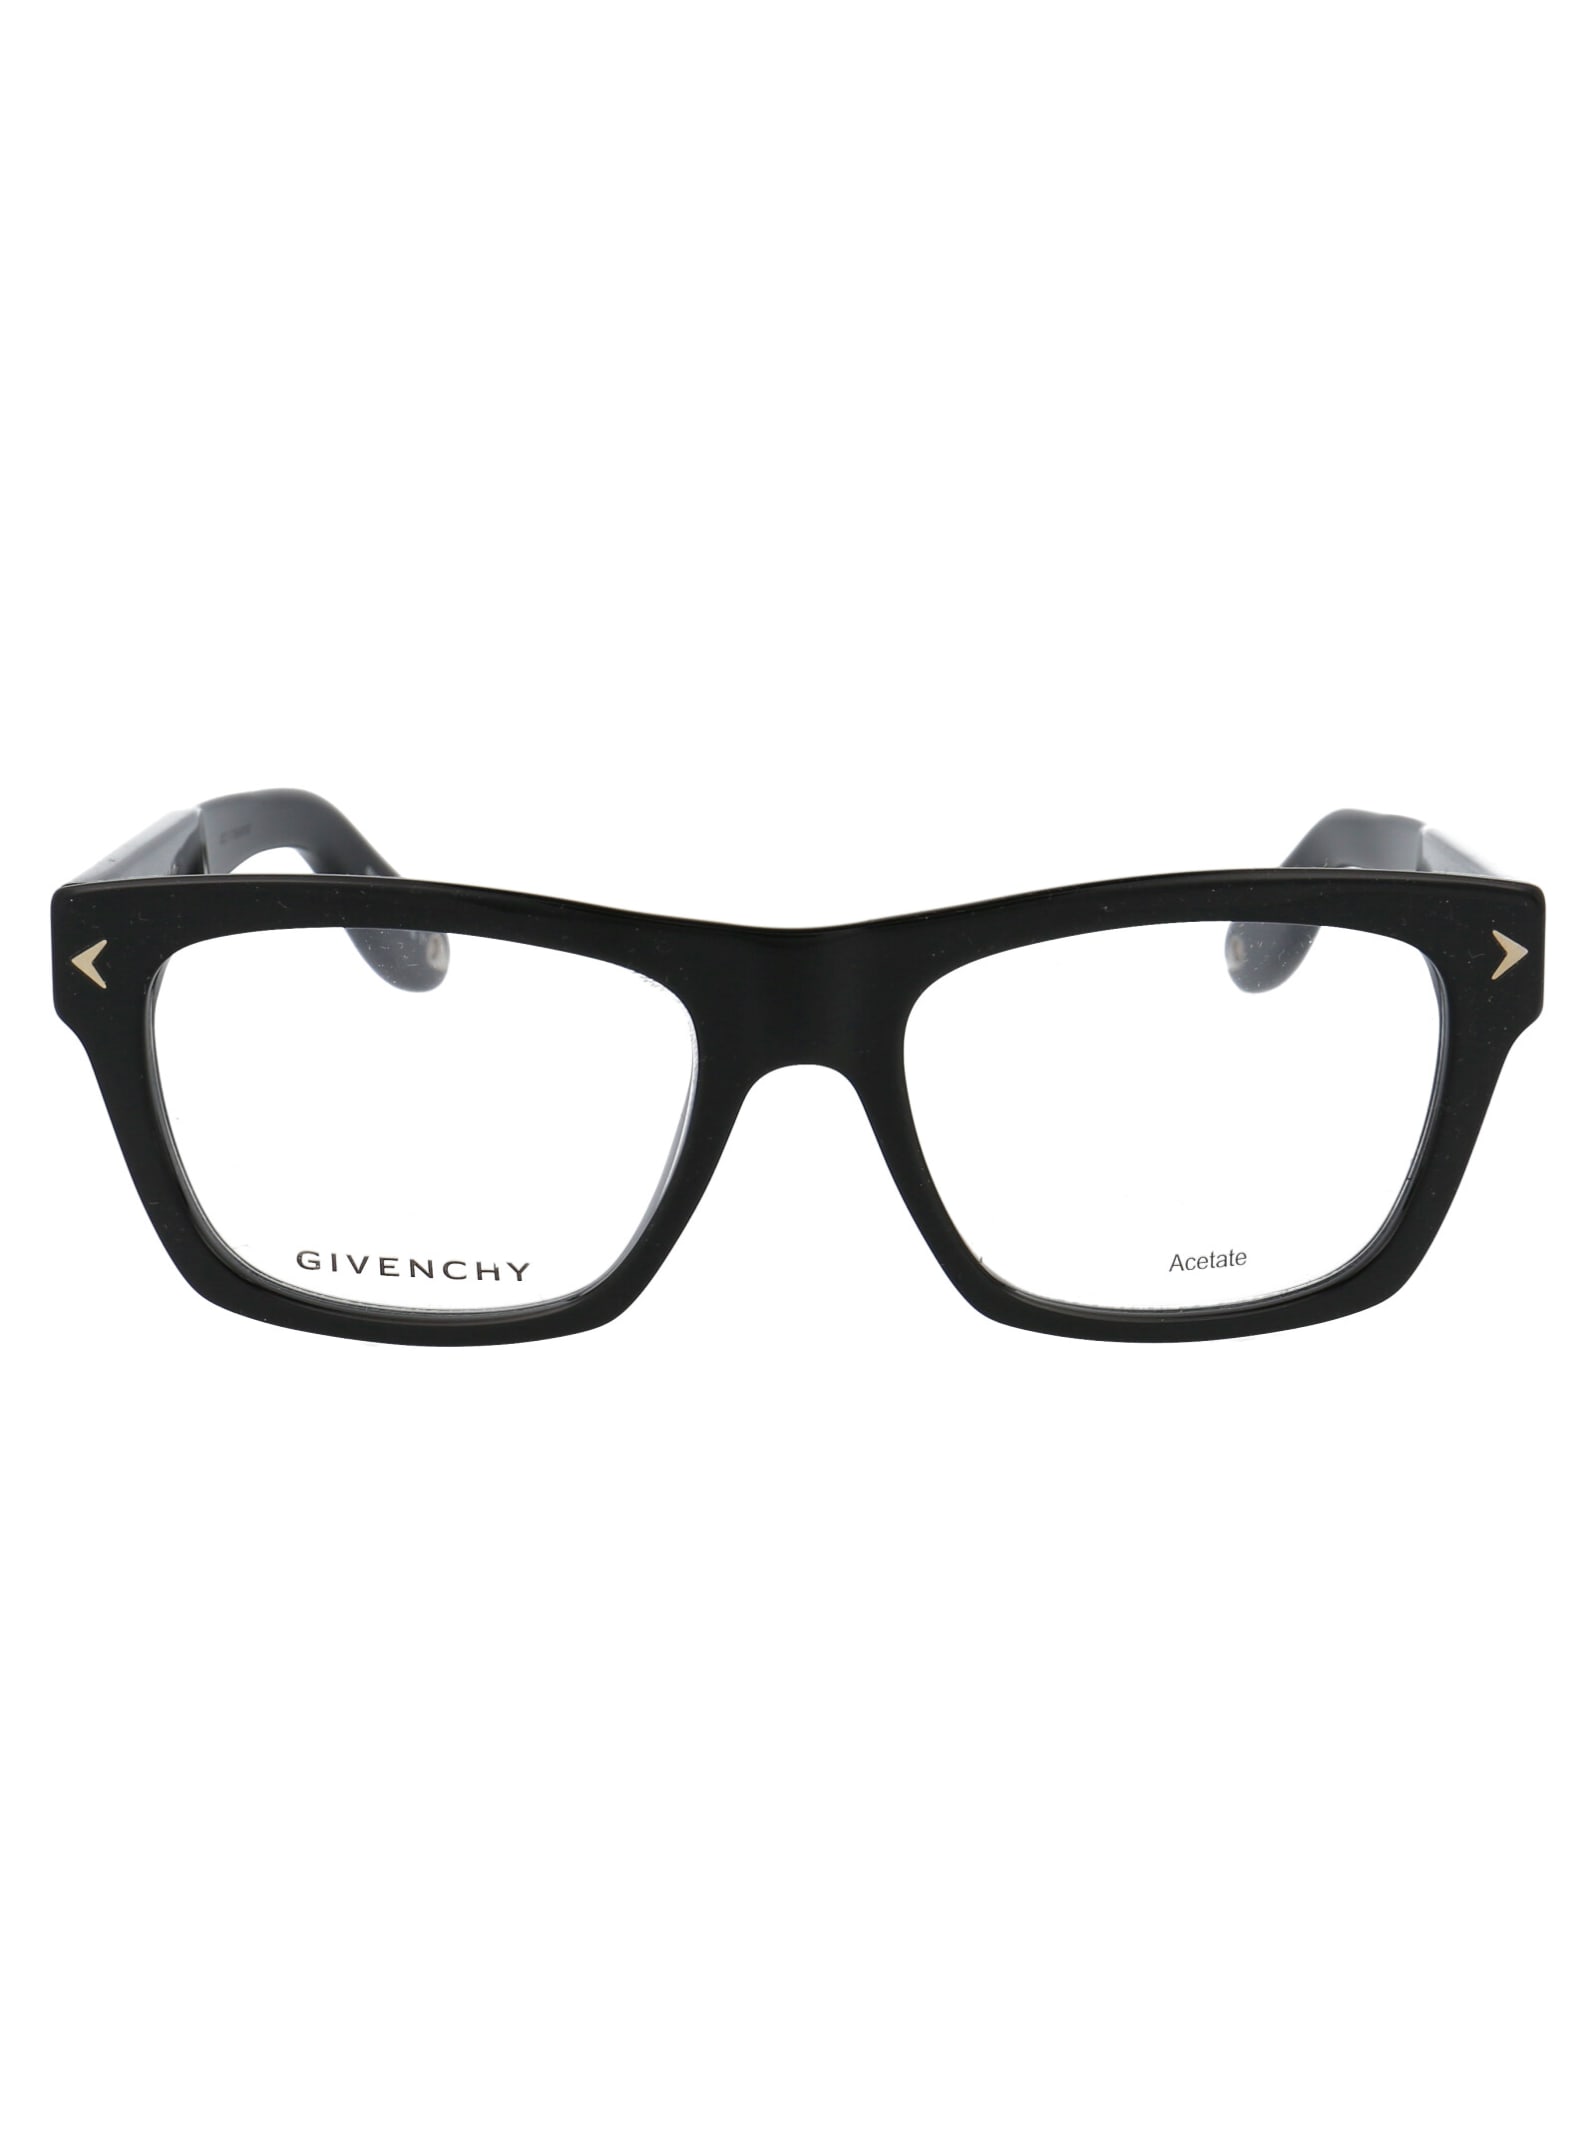 Givenchy Gv 0017 Glasses In 807 Black